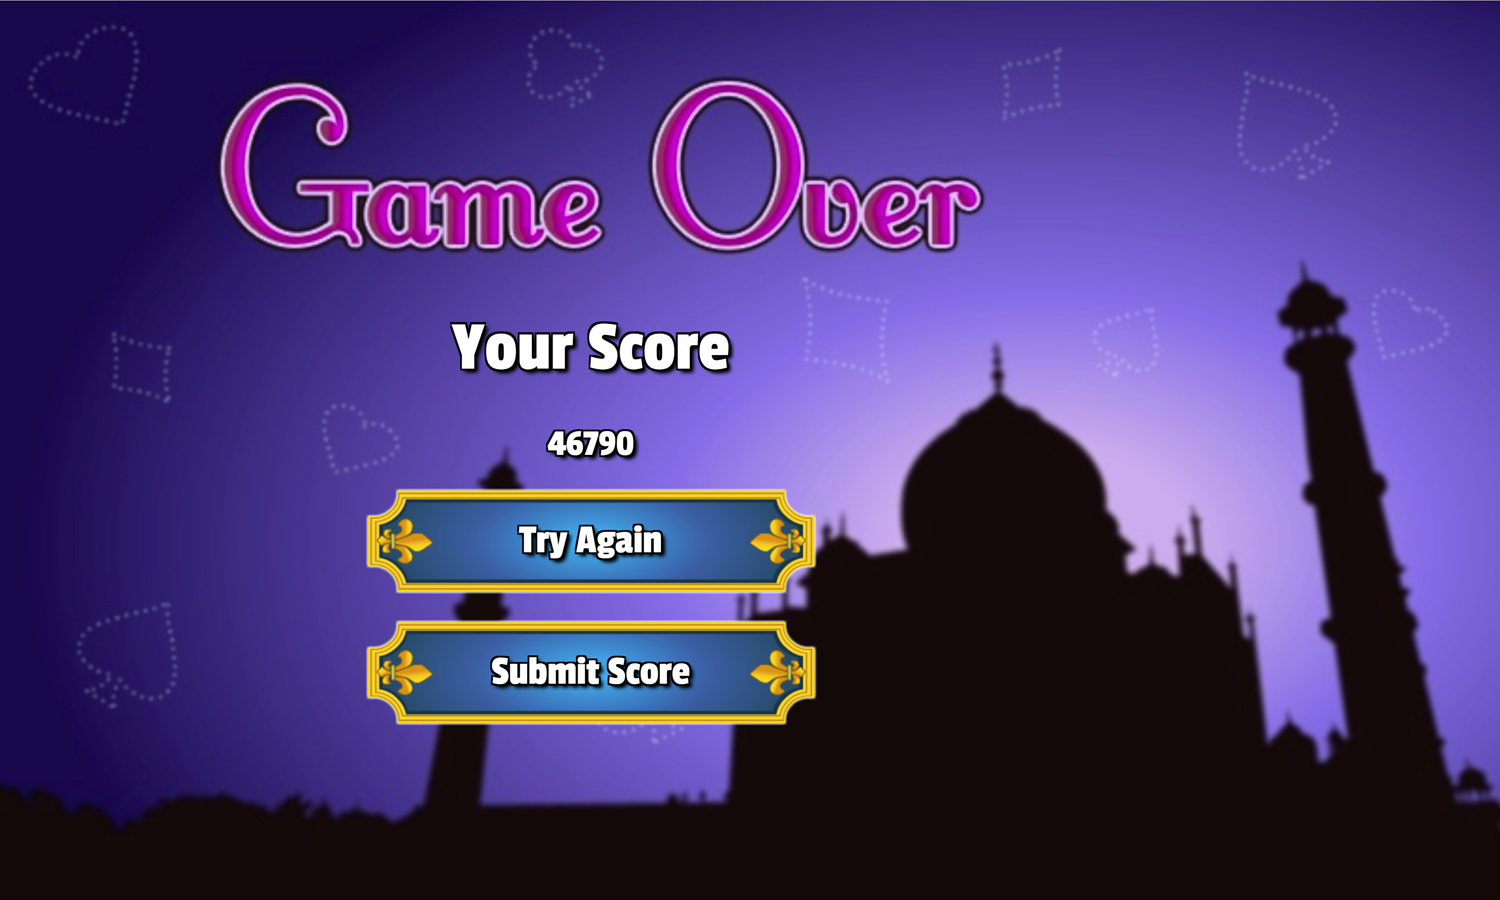 Taj Mahal Solitaire Game Over Screen Screenshot.